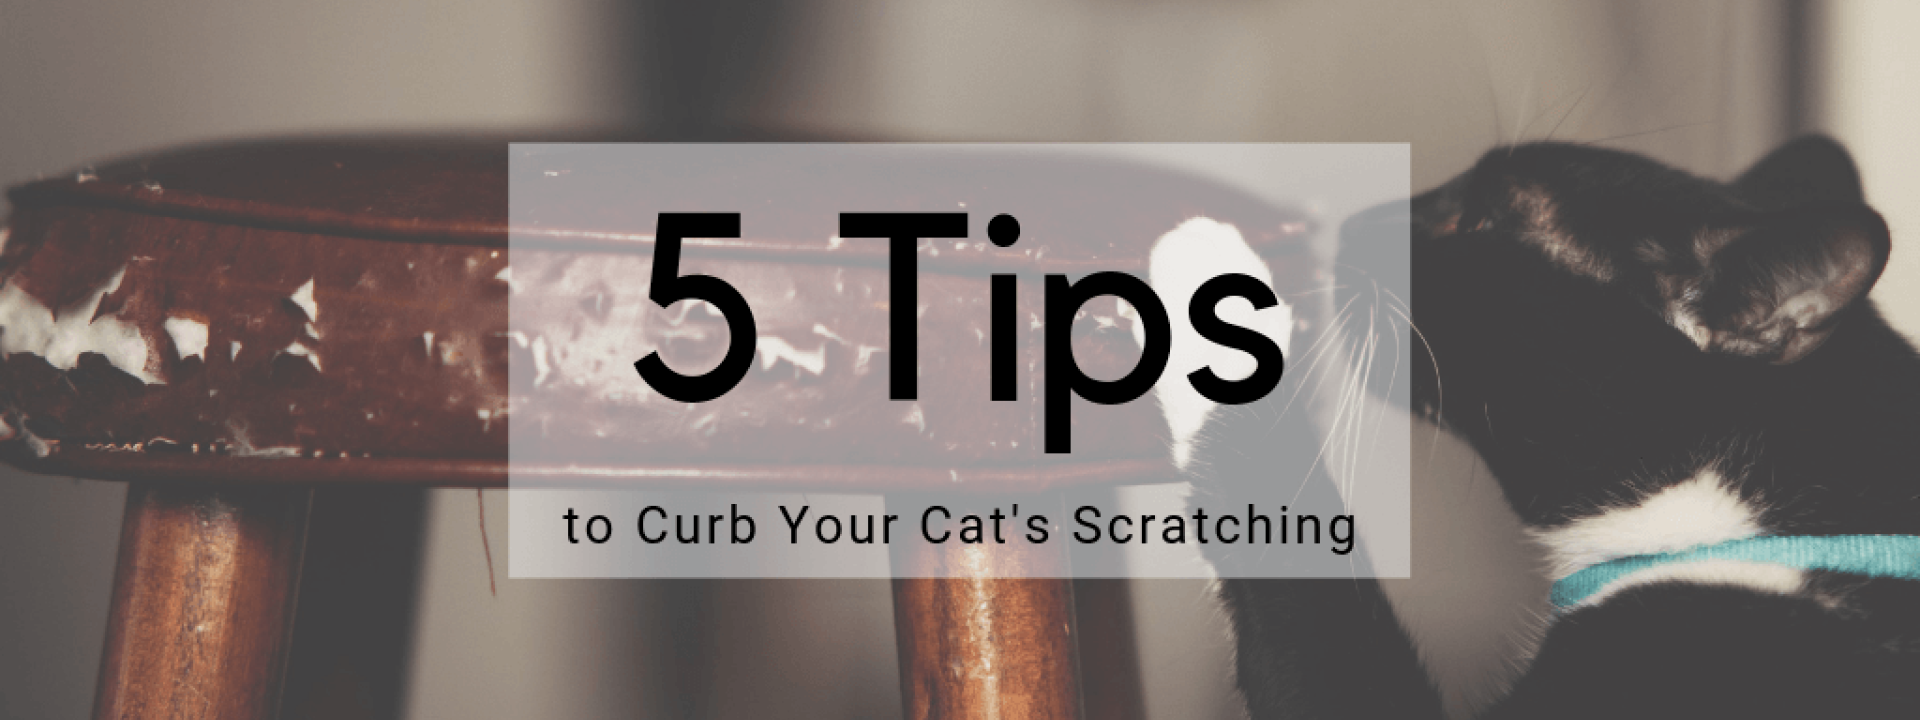 Cat-scratching-blog-header.png